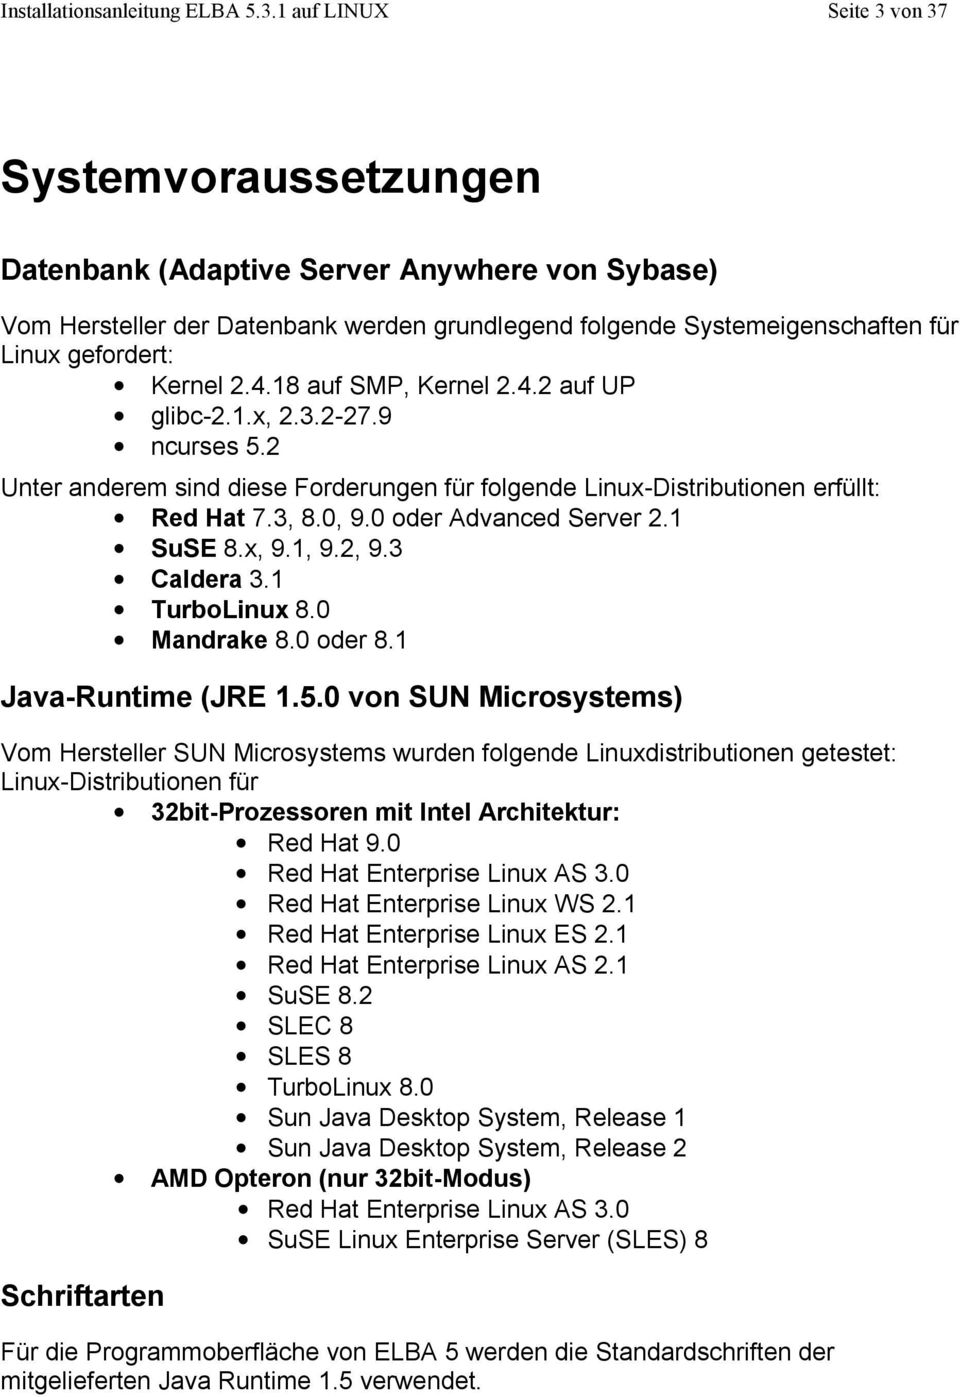 Kernel 2.4.18 auf SMP, Kernel 2.4.2 auf UP glibc-2.1.x, 2.3.2-27.9 ncurses 5.2 Unter anderem sind diese Forderungen für folgende Linux-Distributionen erfüllt: Red Hat 7.3, 8.0, 9.